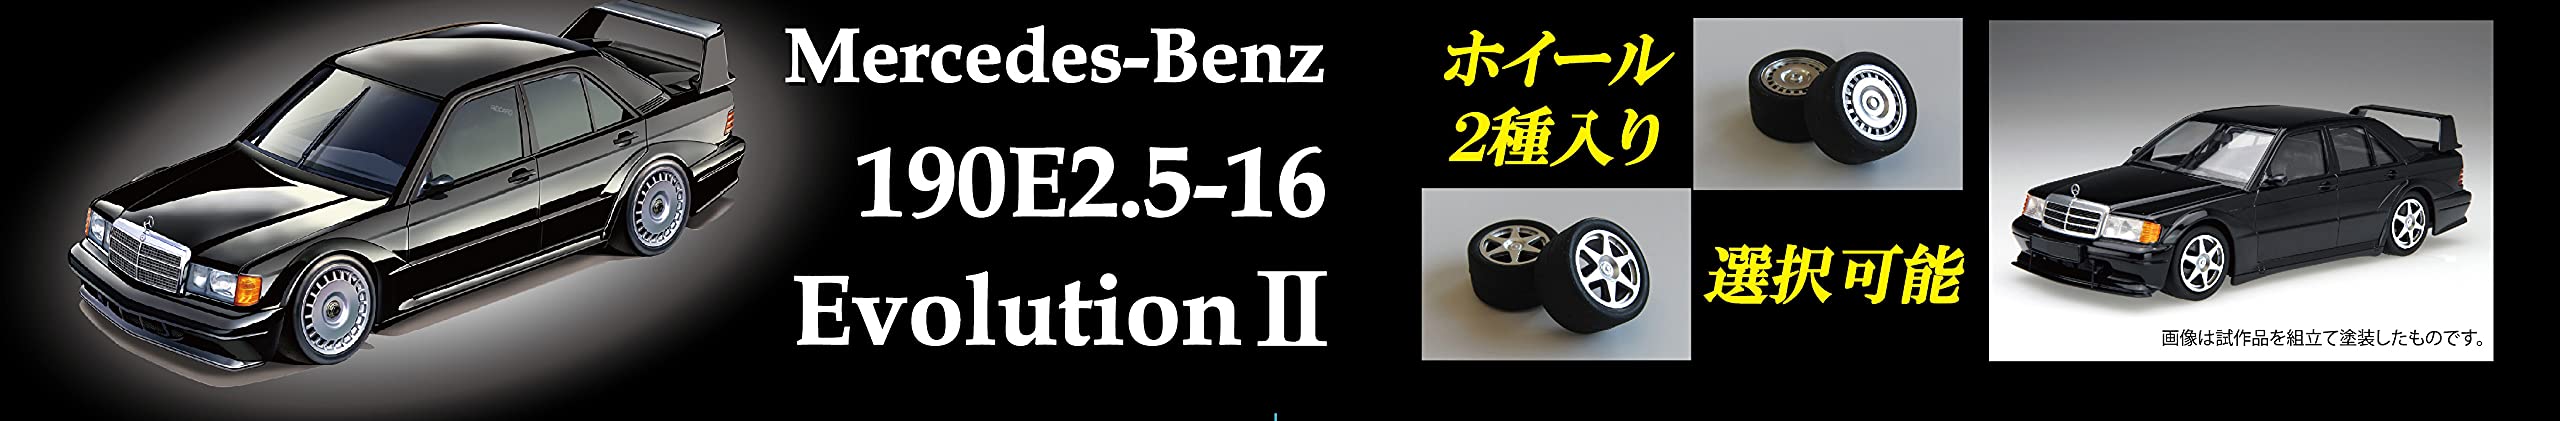 FUJIMI Real Sports Car 1/24 Mercedes-Benz 190E2.5-16 Evolution Ll Plastic Model